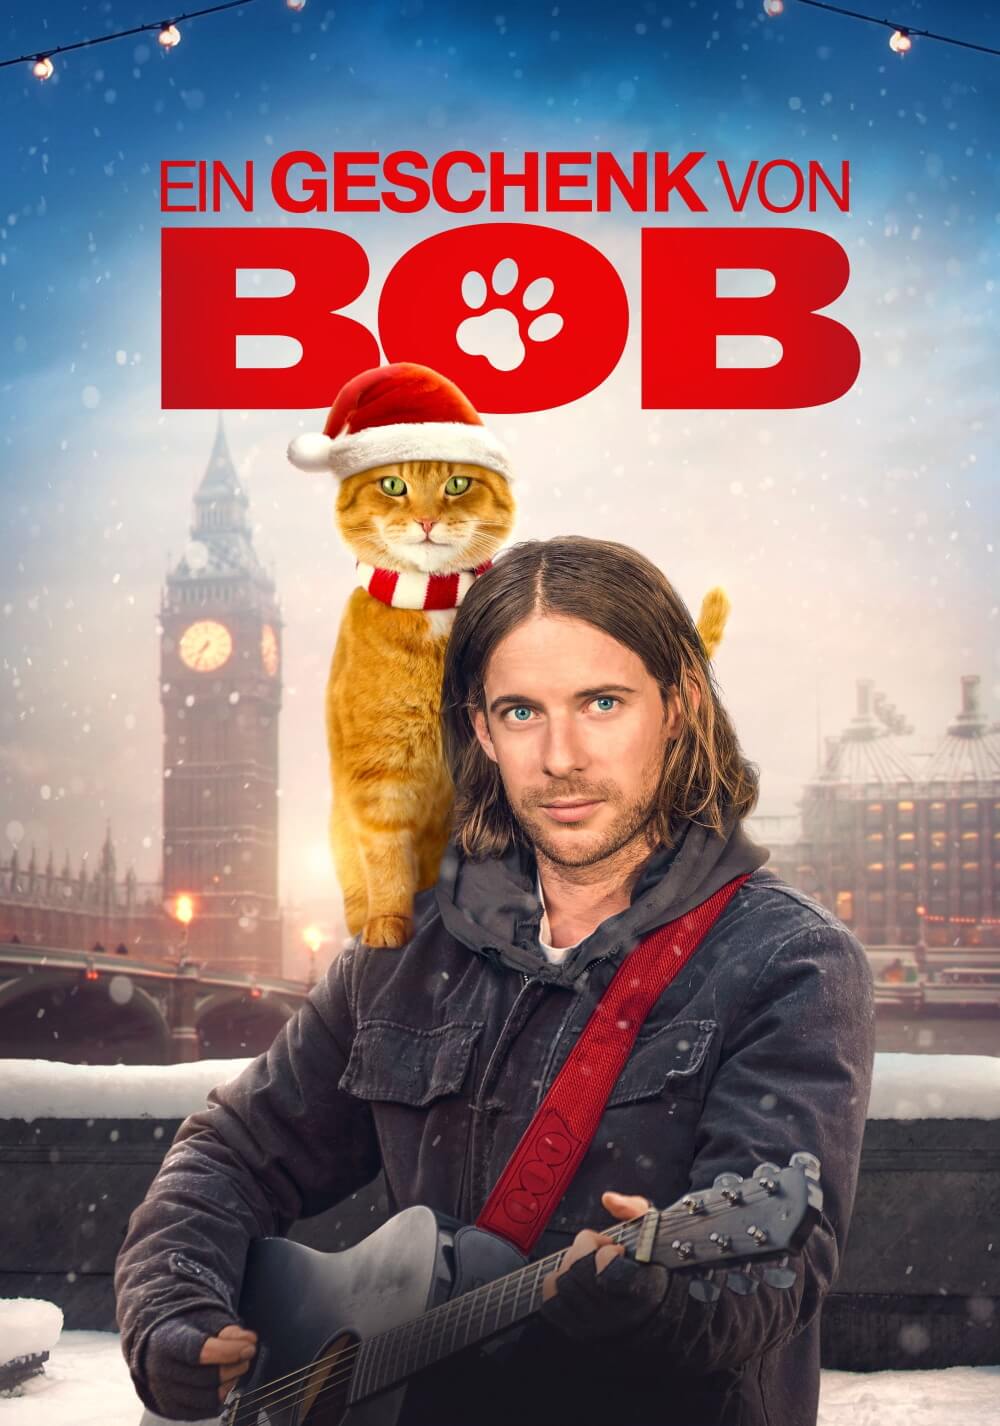 هدیه ای از باب (A Christmas Gift from Bob)